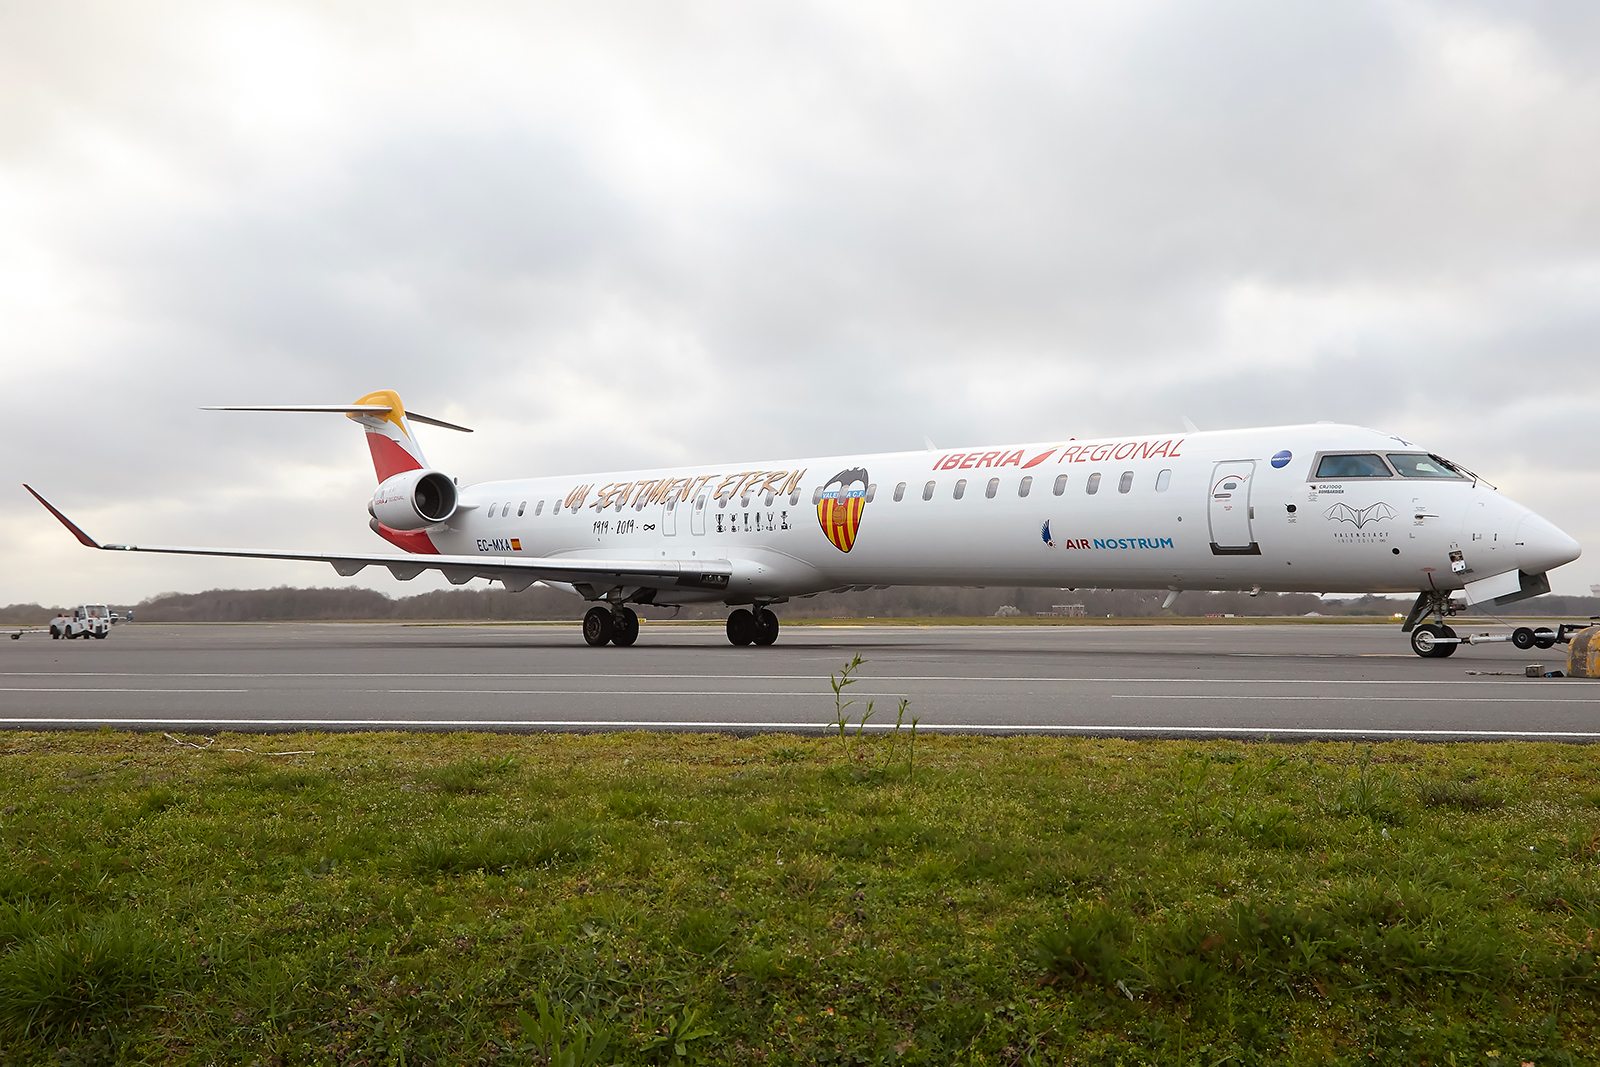 [02/03/2019] CRJ1000 (EC-MXA) Air Nostrum "Valencia CF" livery 1903040624345493216145548